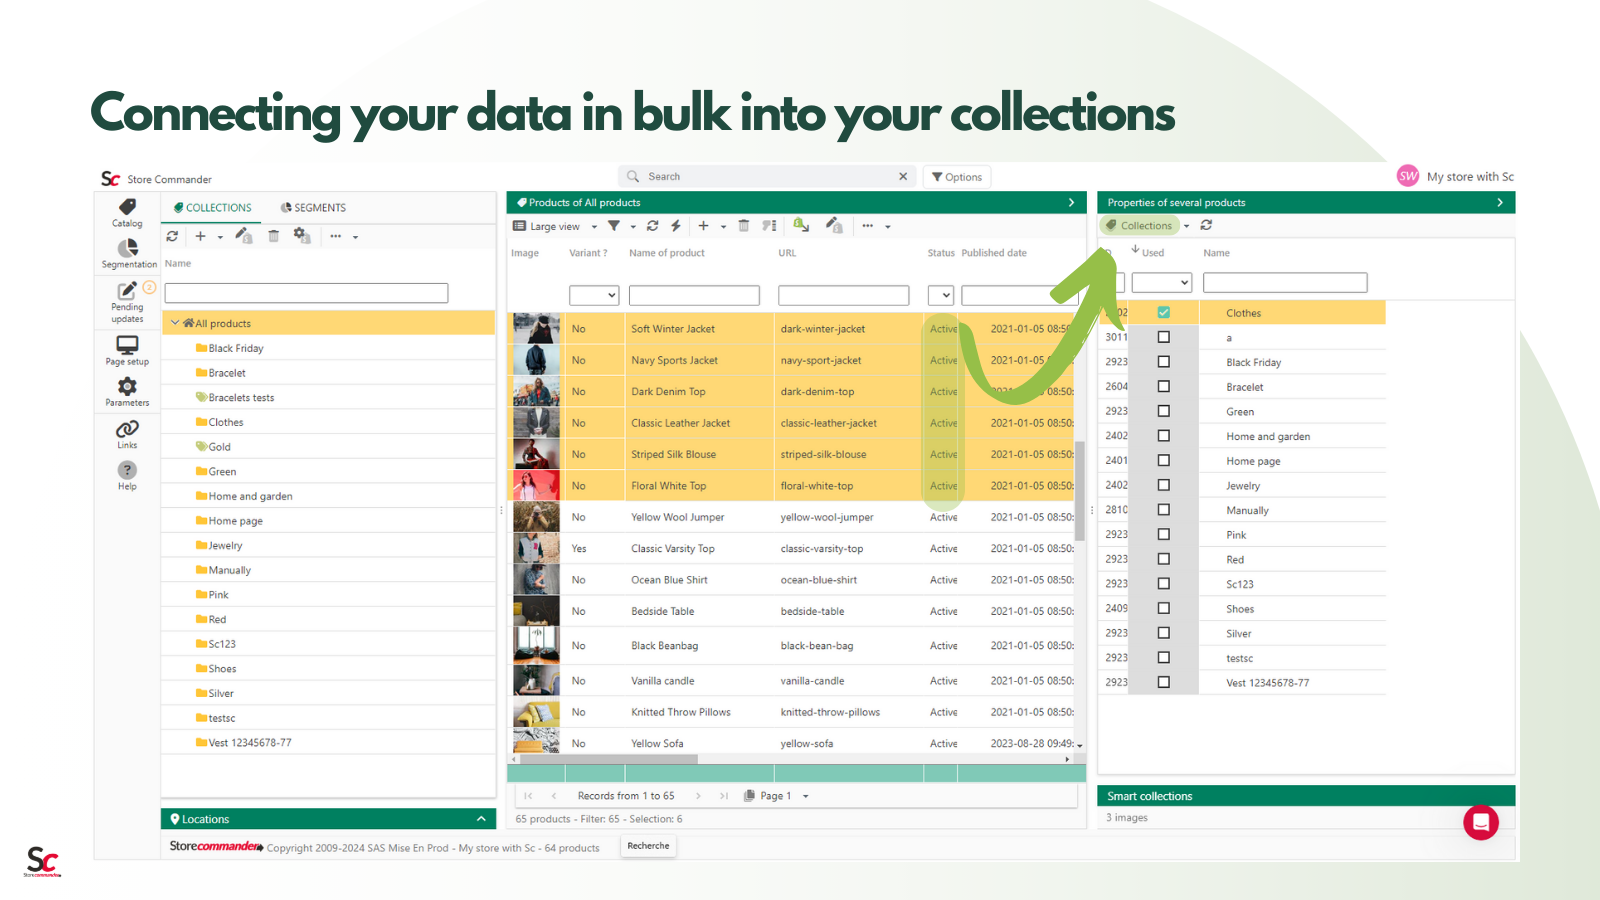 Verbind uw gegevens in bulk met uw Collecties in slechts een paar klikken